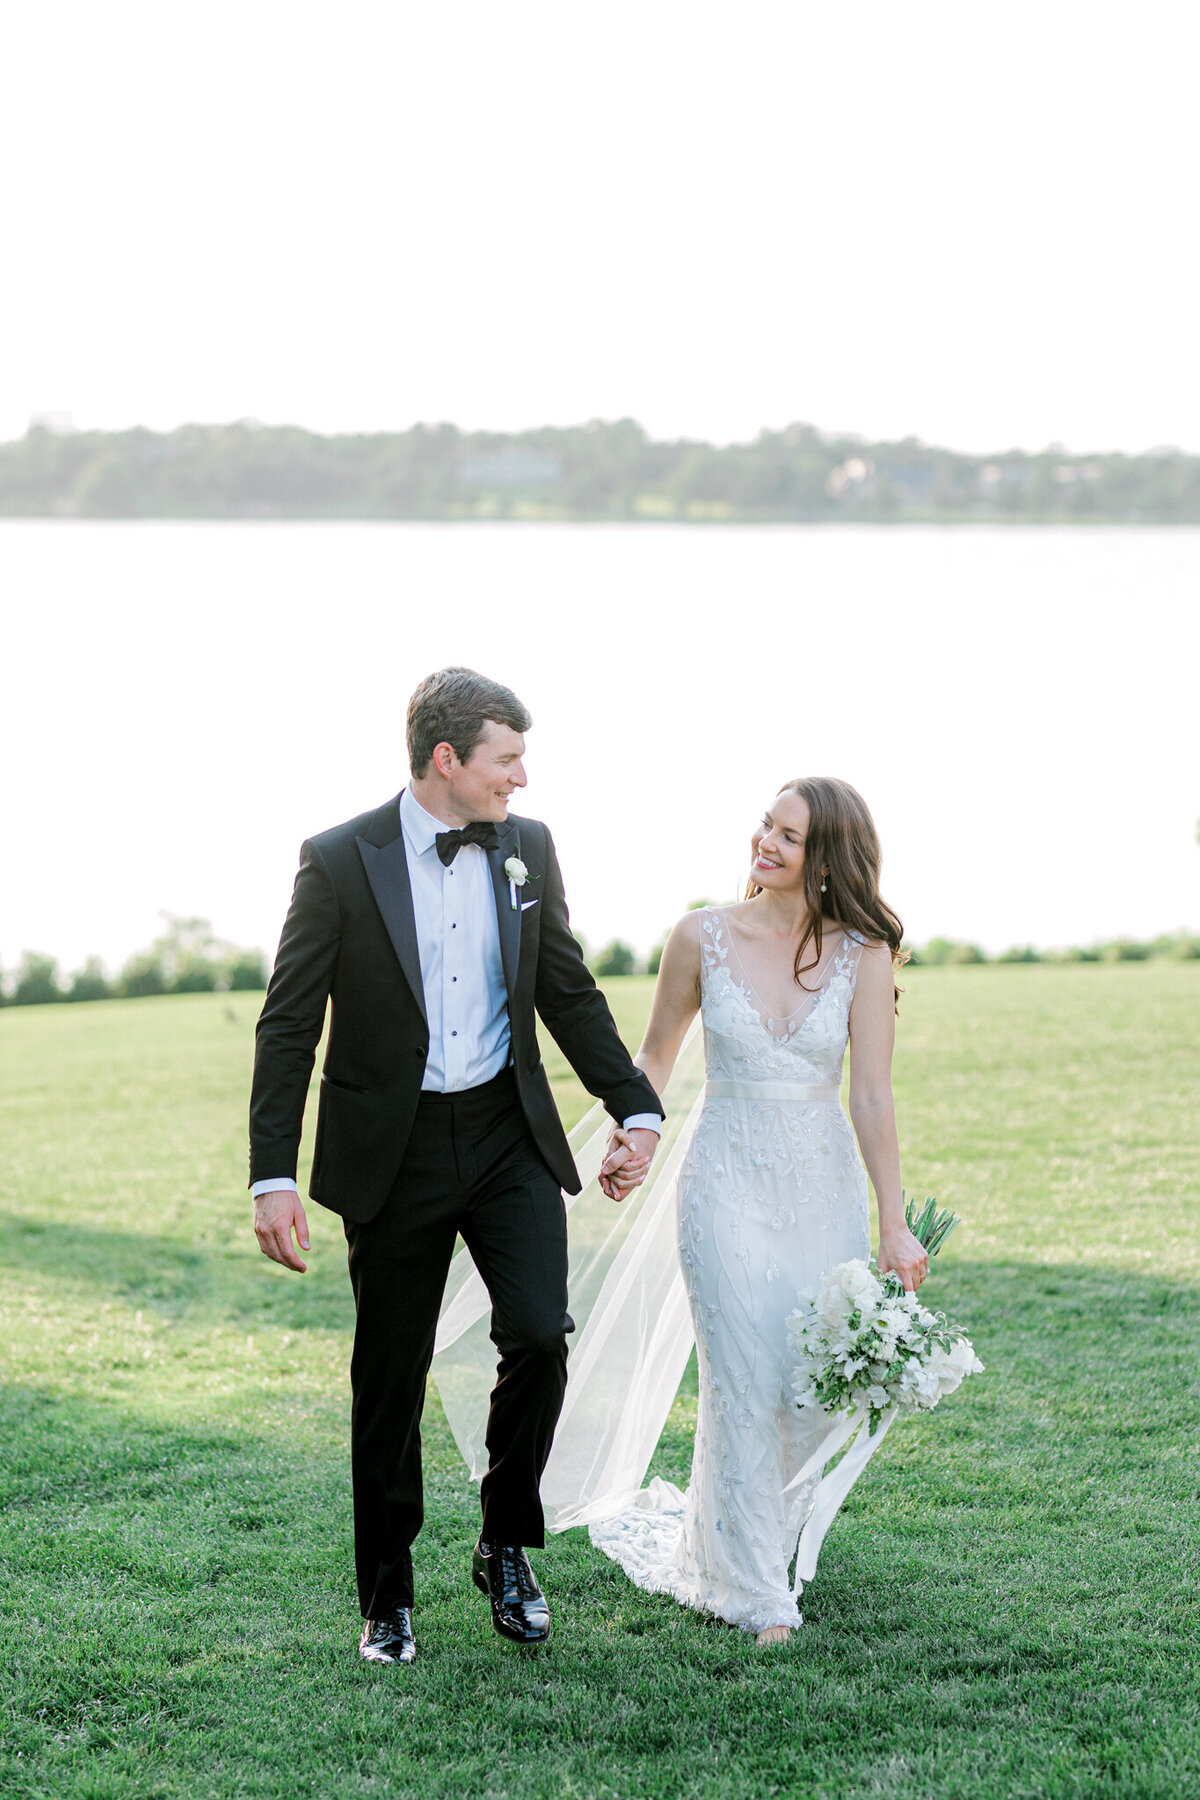 Gena & Matt's Wedding at the Dallas Arboretum | Dallas Wedding Photographer | Sami Kathryn Photography-170